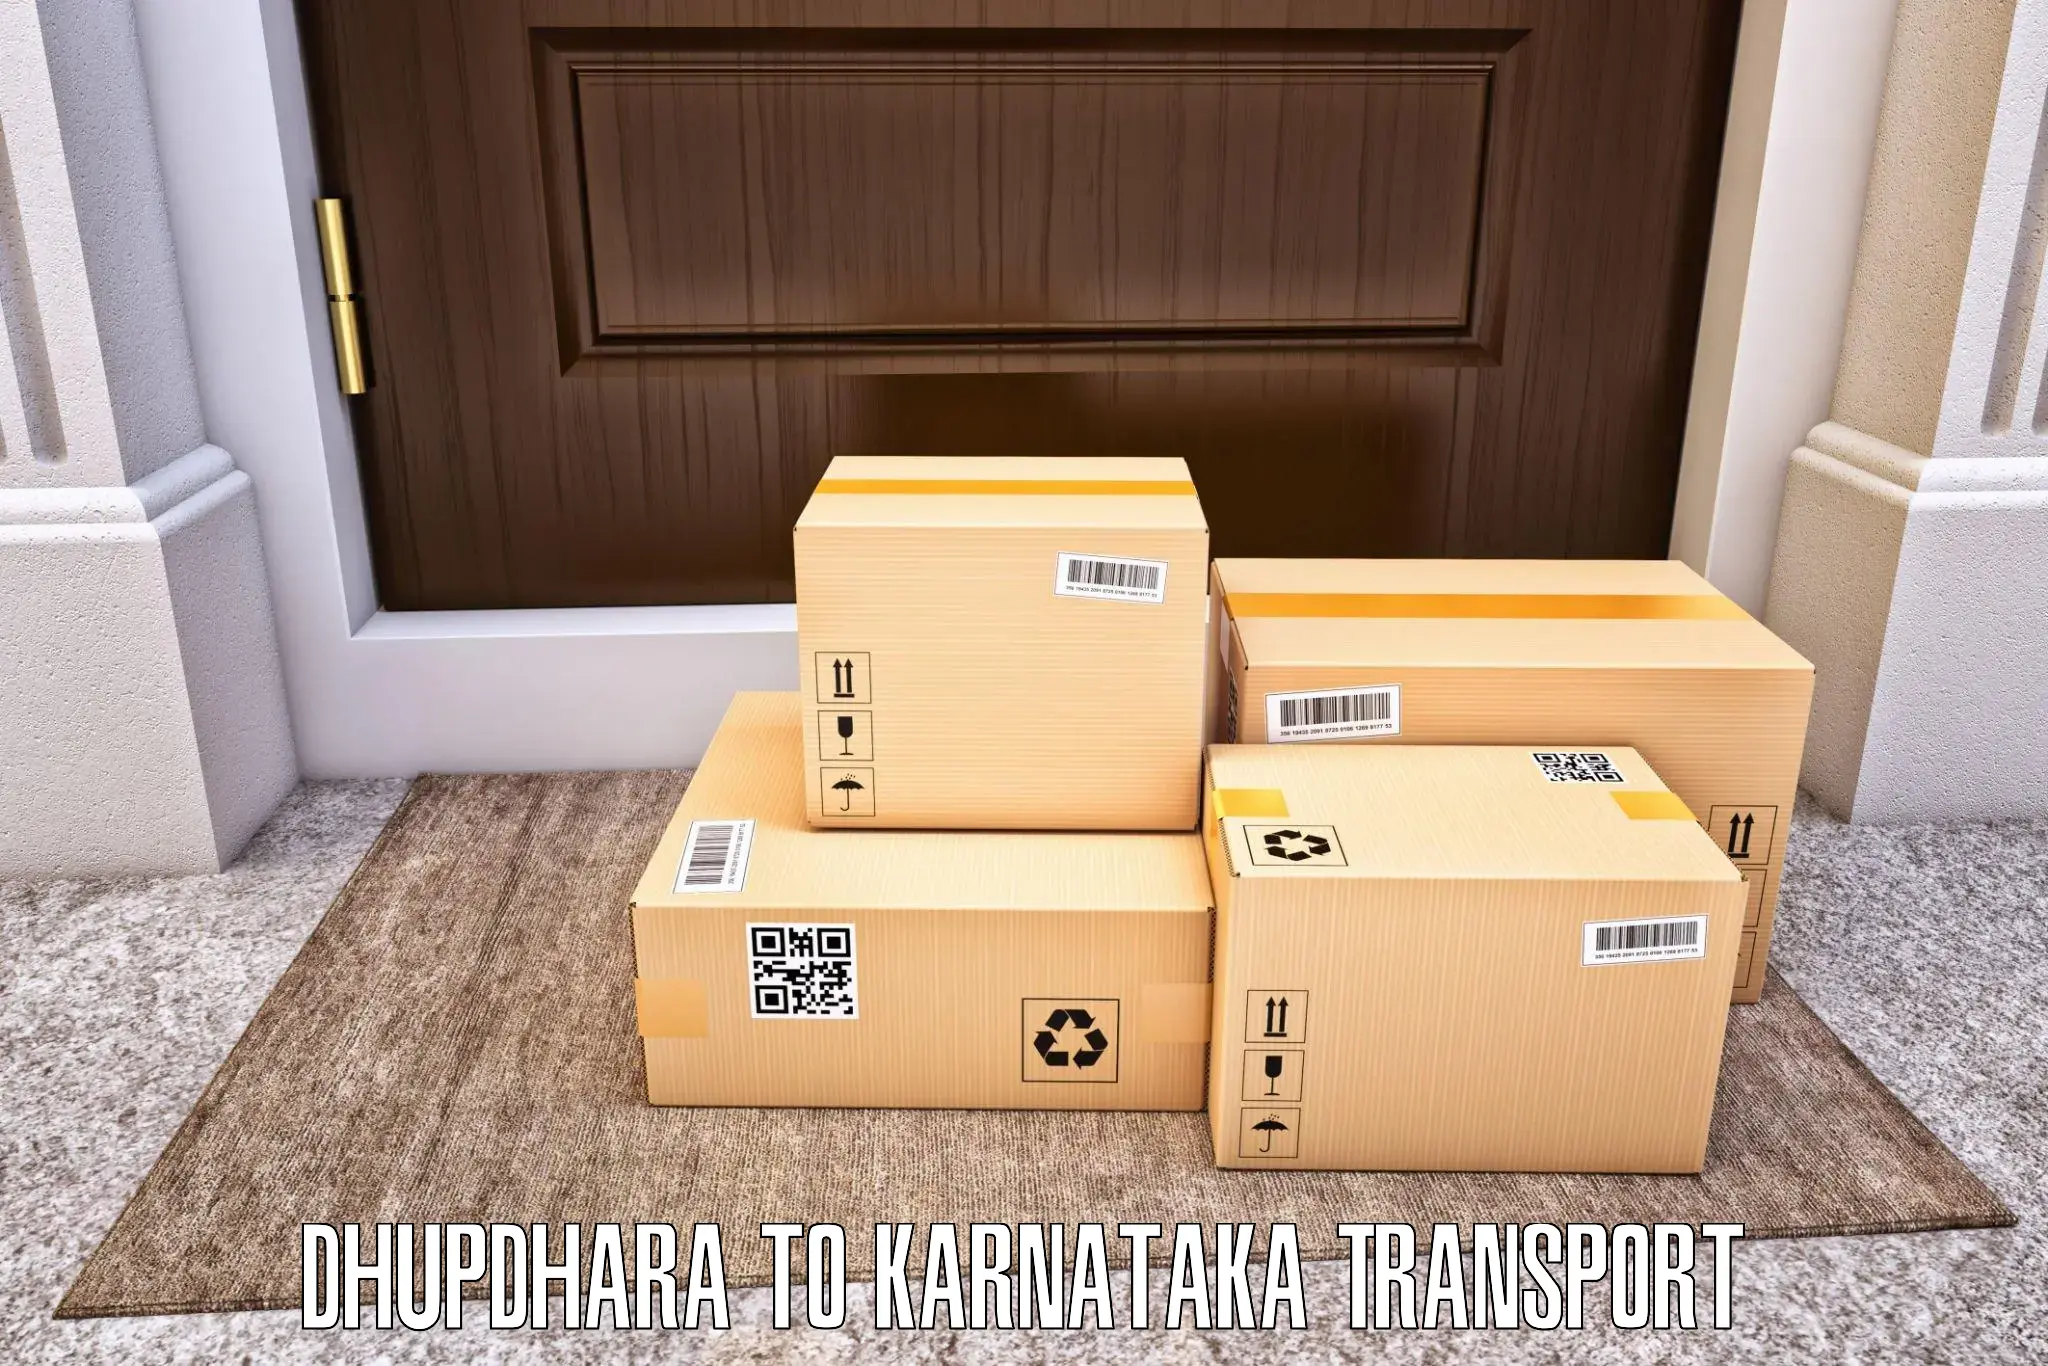 Luggage transport services Dhupdhara to Ramanagara